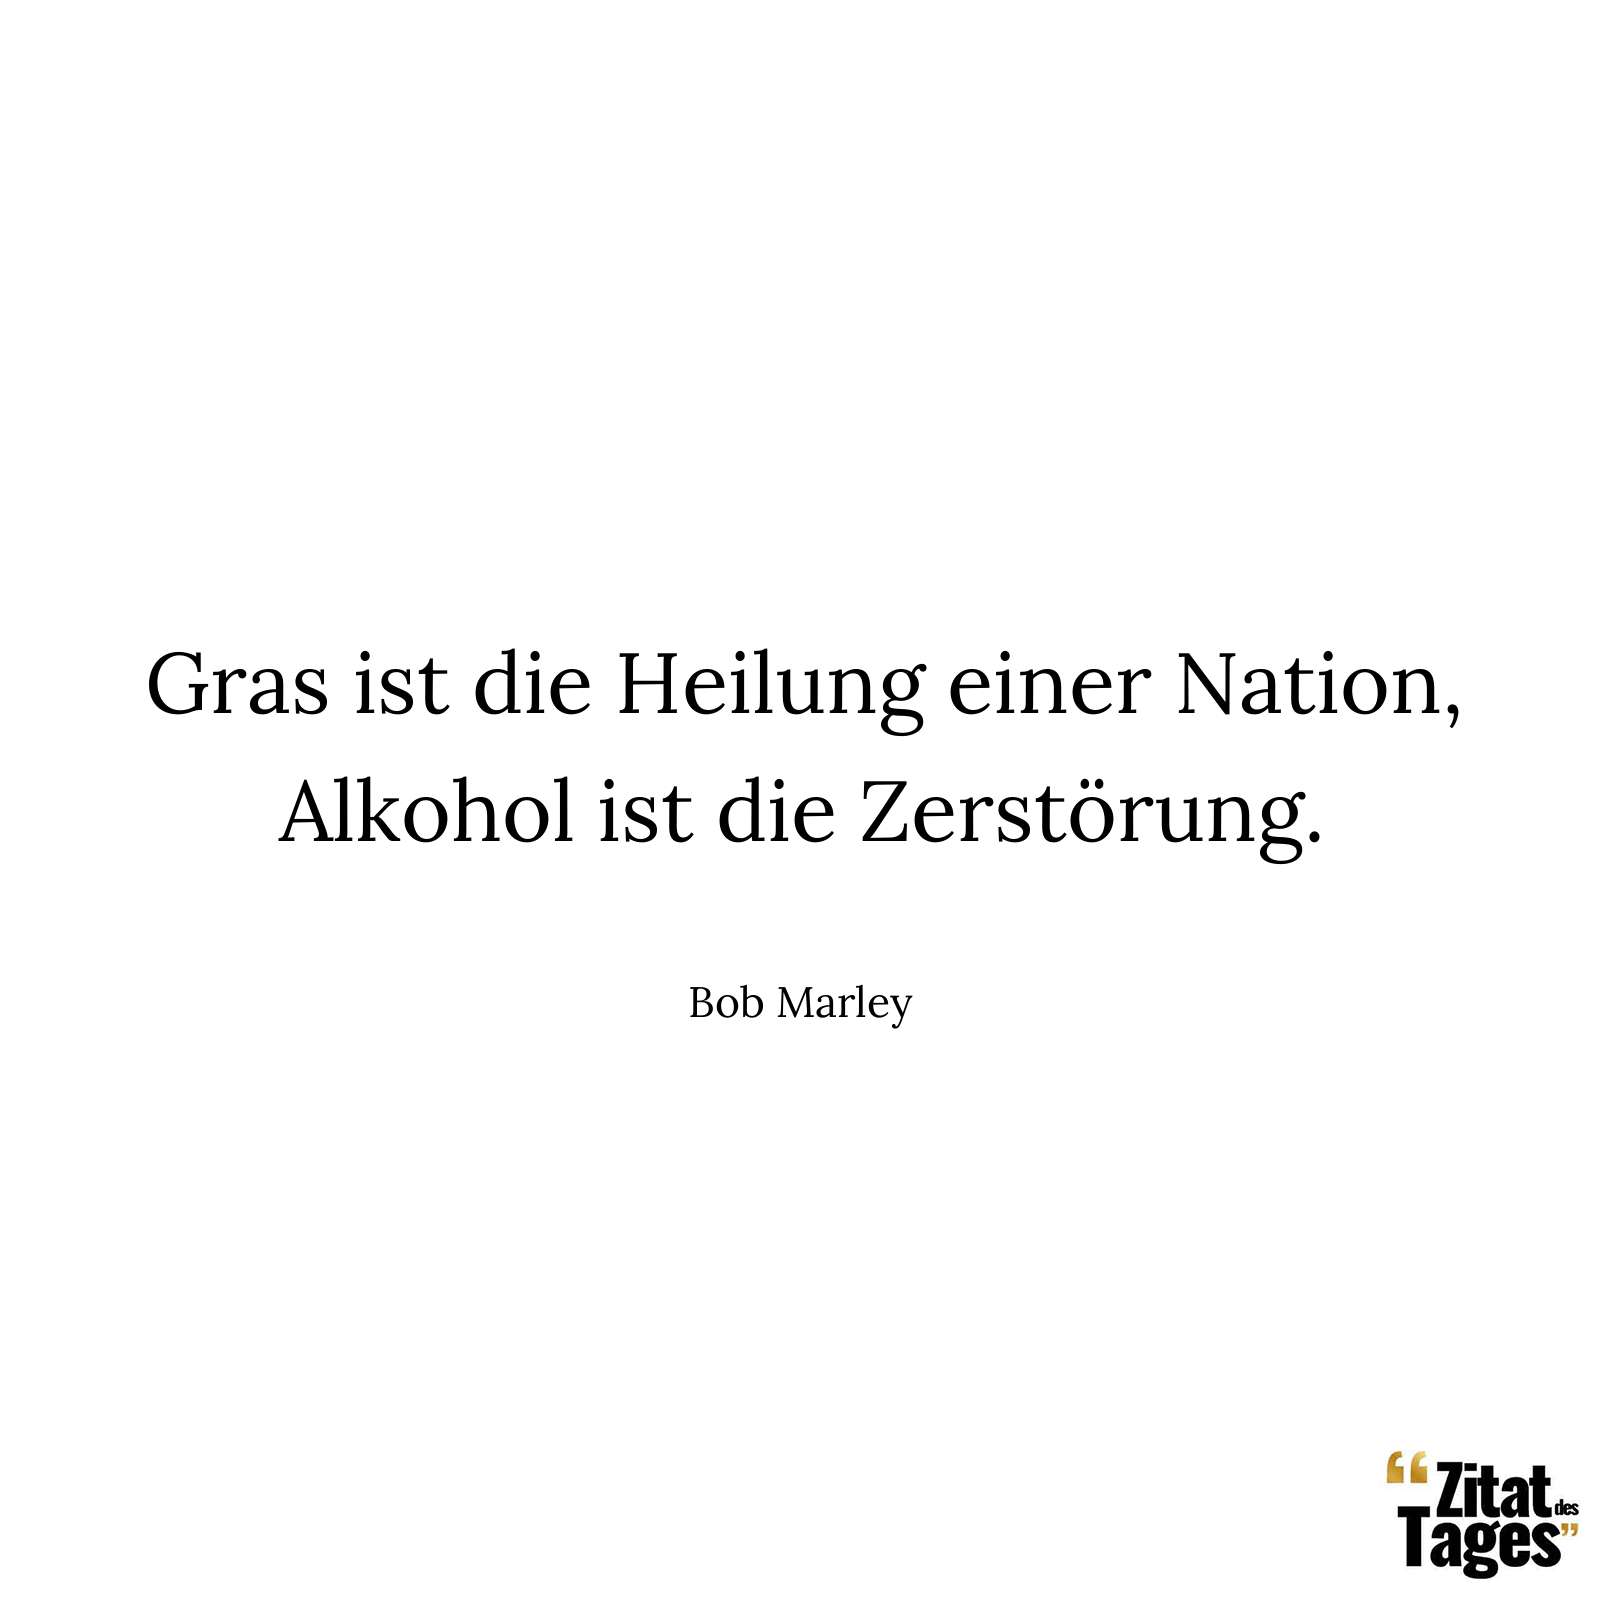 Gras ist die Heilung einer Nation, Alkohol ist die Zerstörung. - Bob Marley